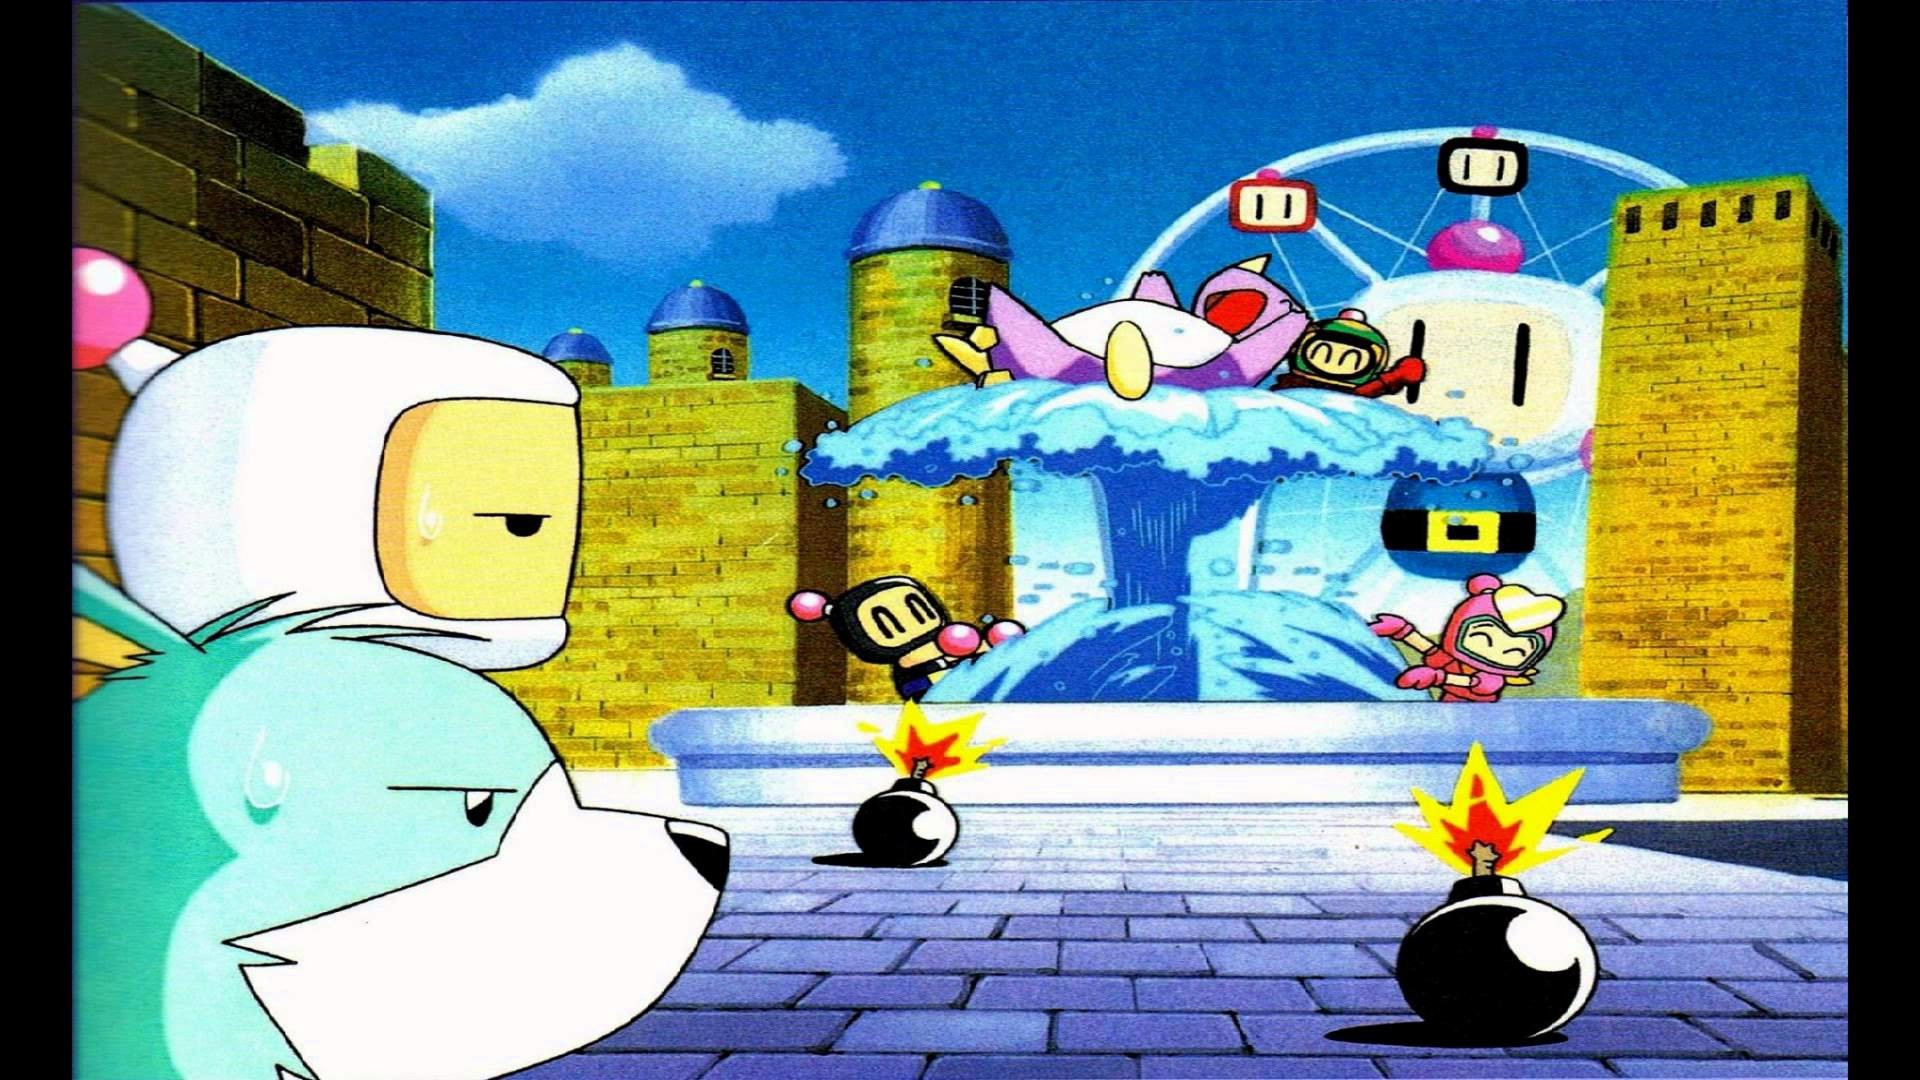 1920x1080 Favorite Video Game Music # 275: Bomber Castle from Bomberman Fantasy Race